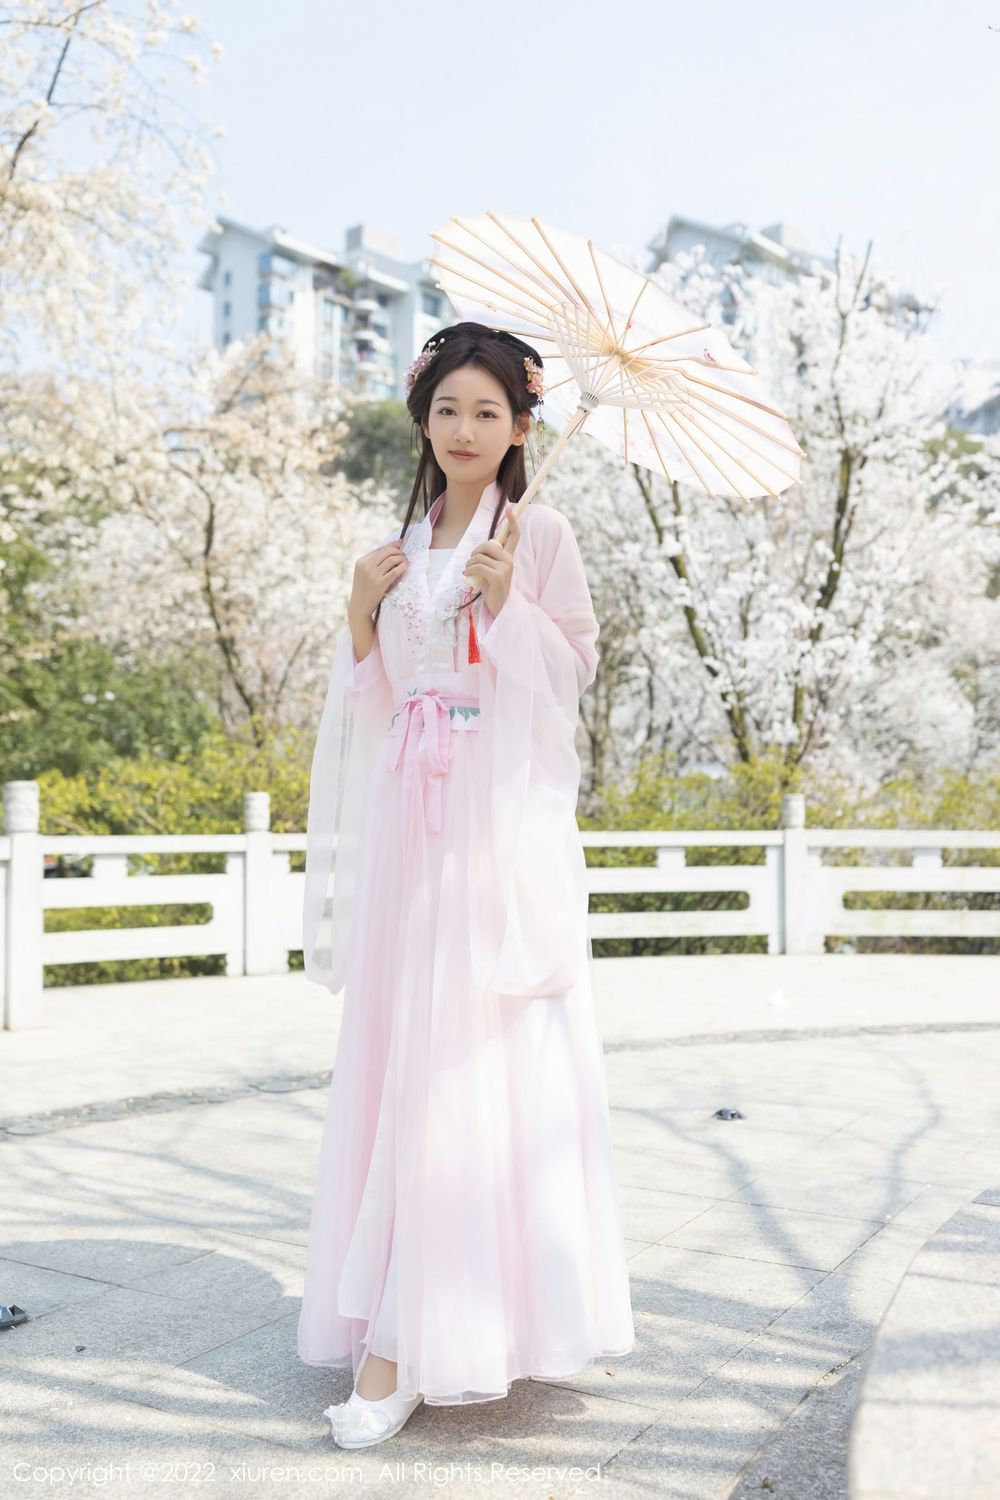 美女模特唐安琪 - 轻透淡粉色古装服饰珠三角旅拍